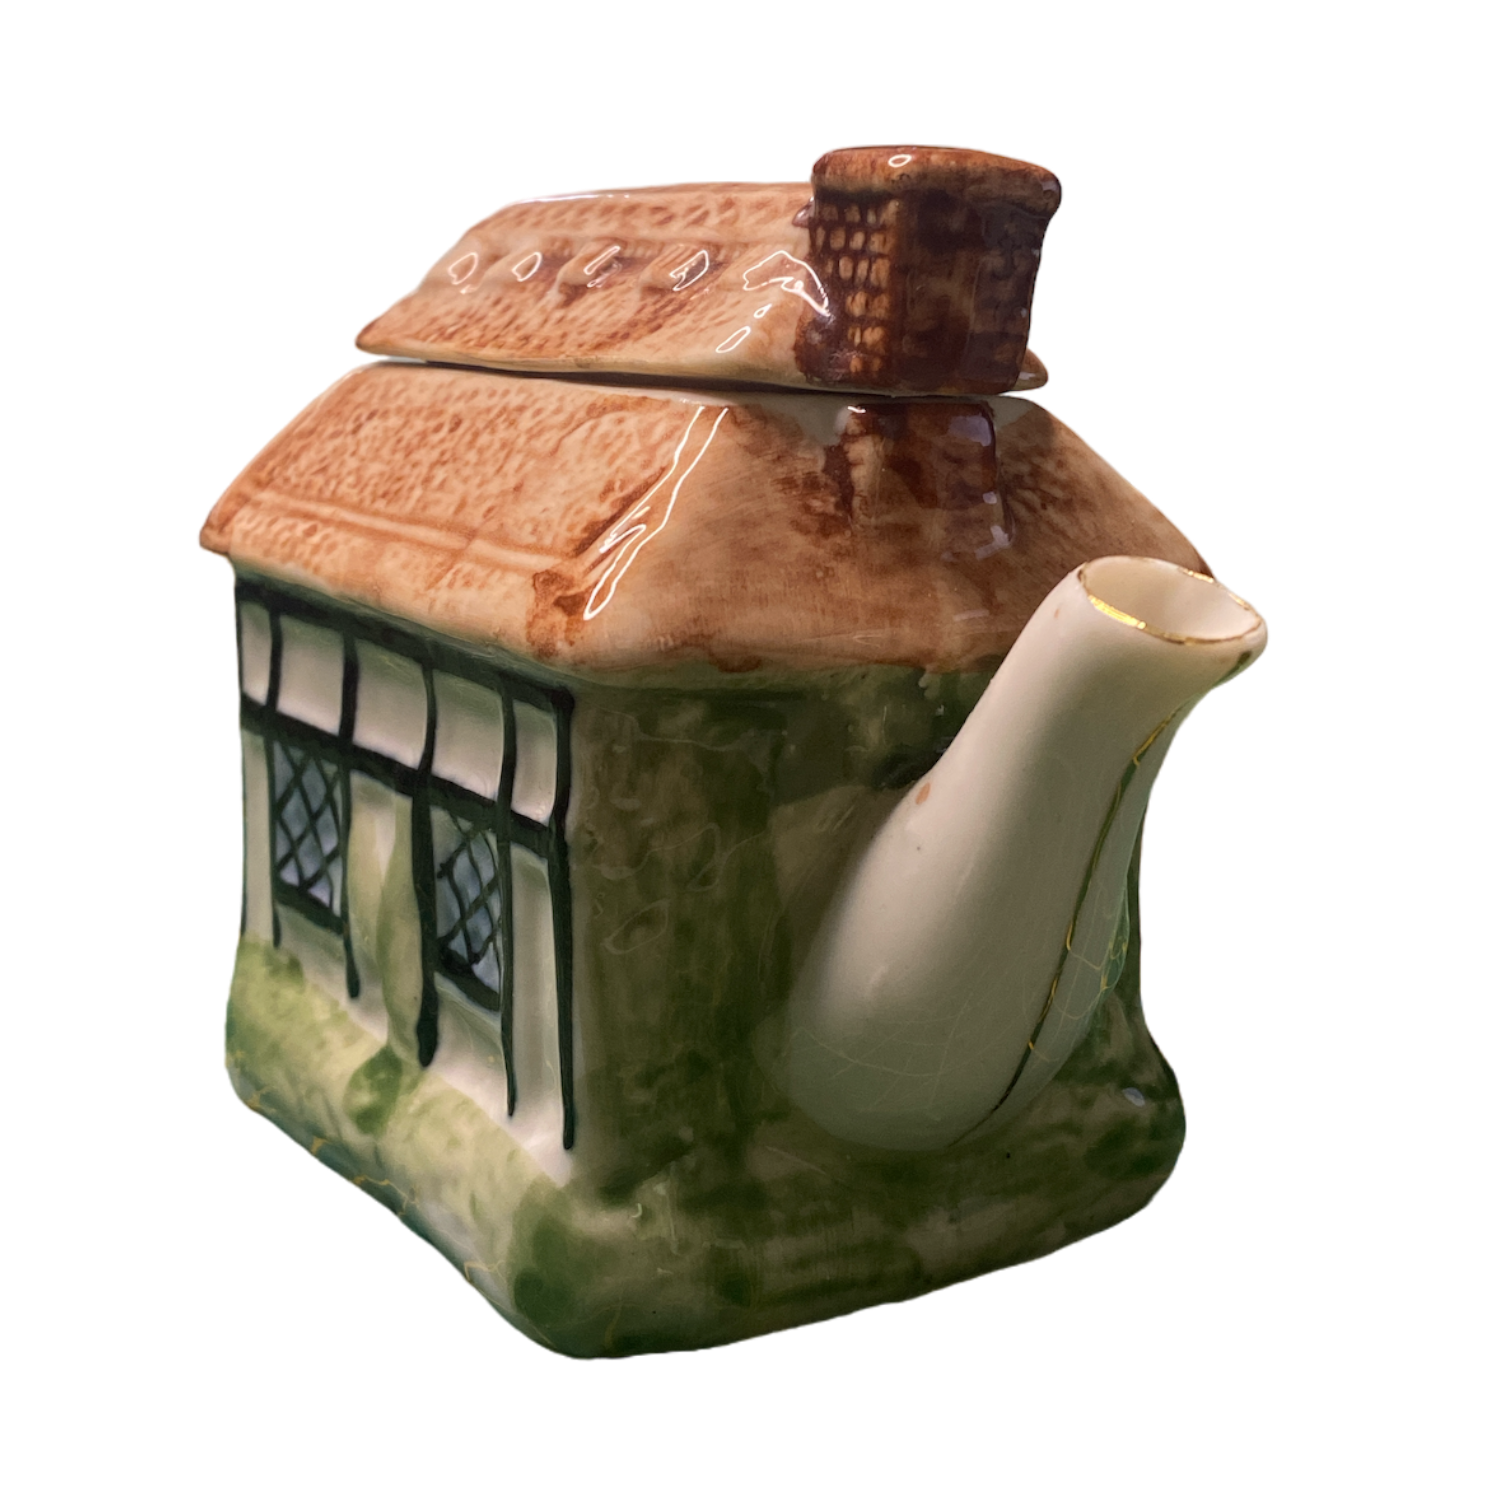 Preloved Cottage Teapot